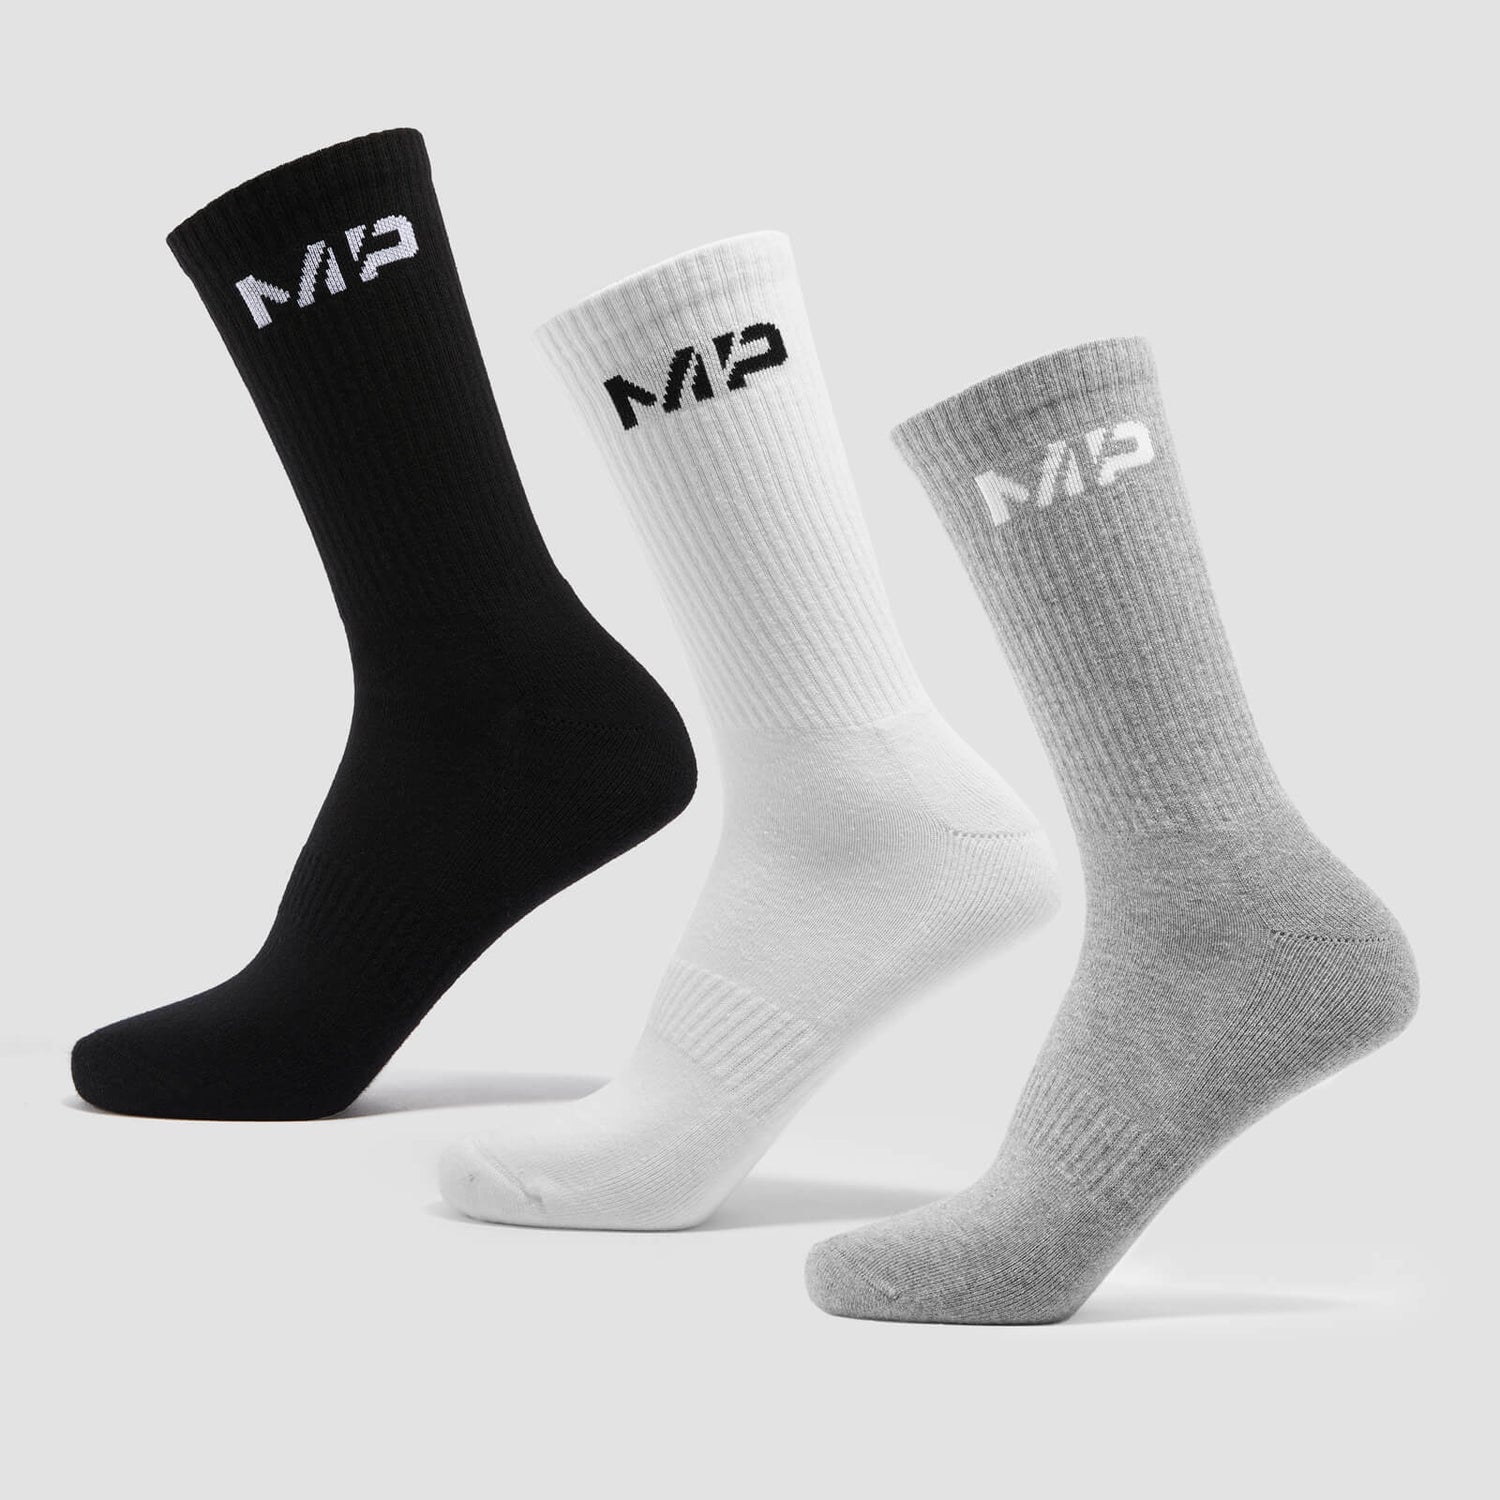 MP Unisex Crew Socks (3 Pack) - White/Black/Grey Marl - UK 6-9